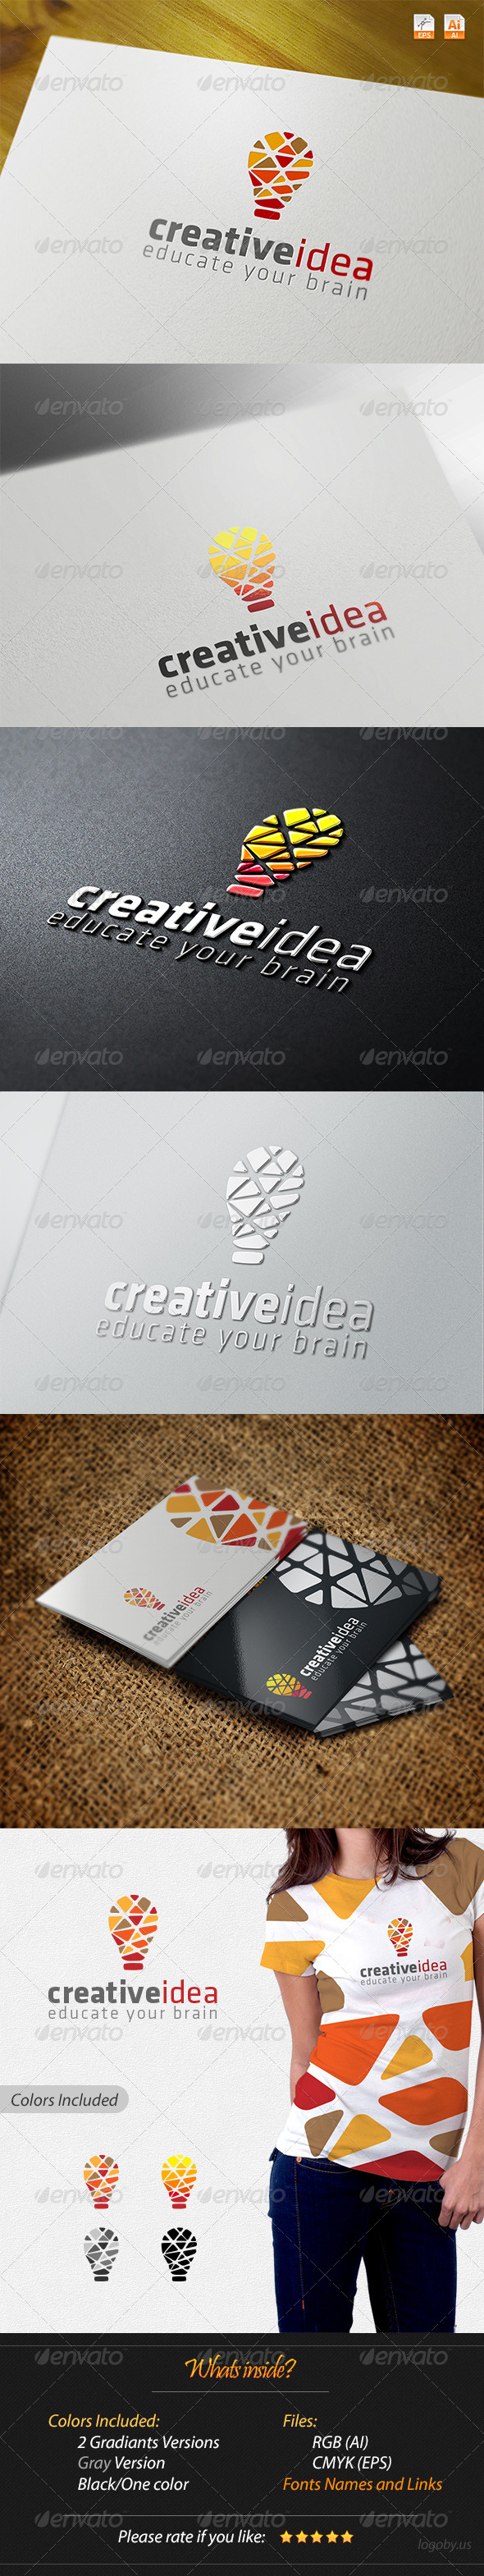 Creative Idea - Educate Your Brain